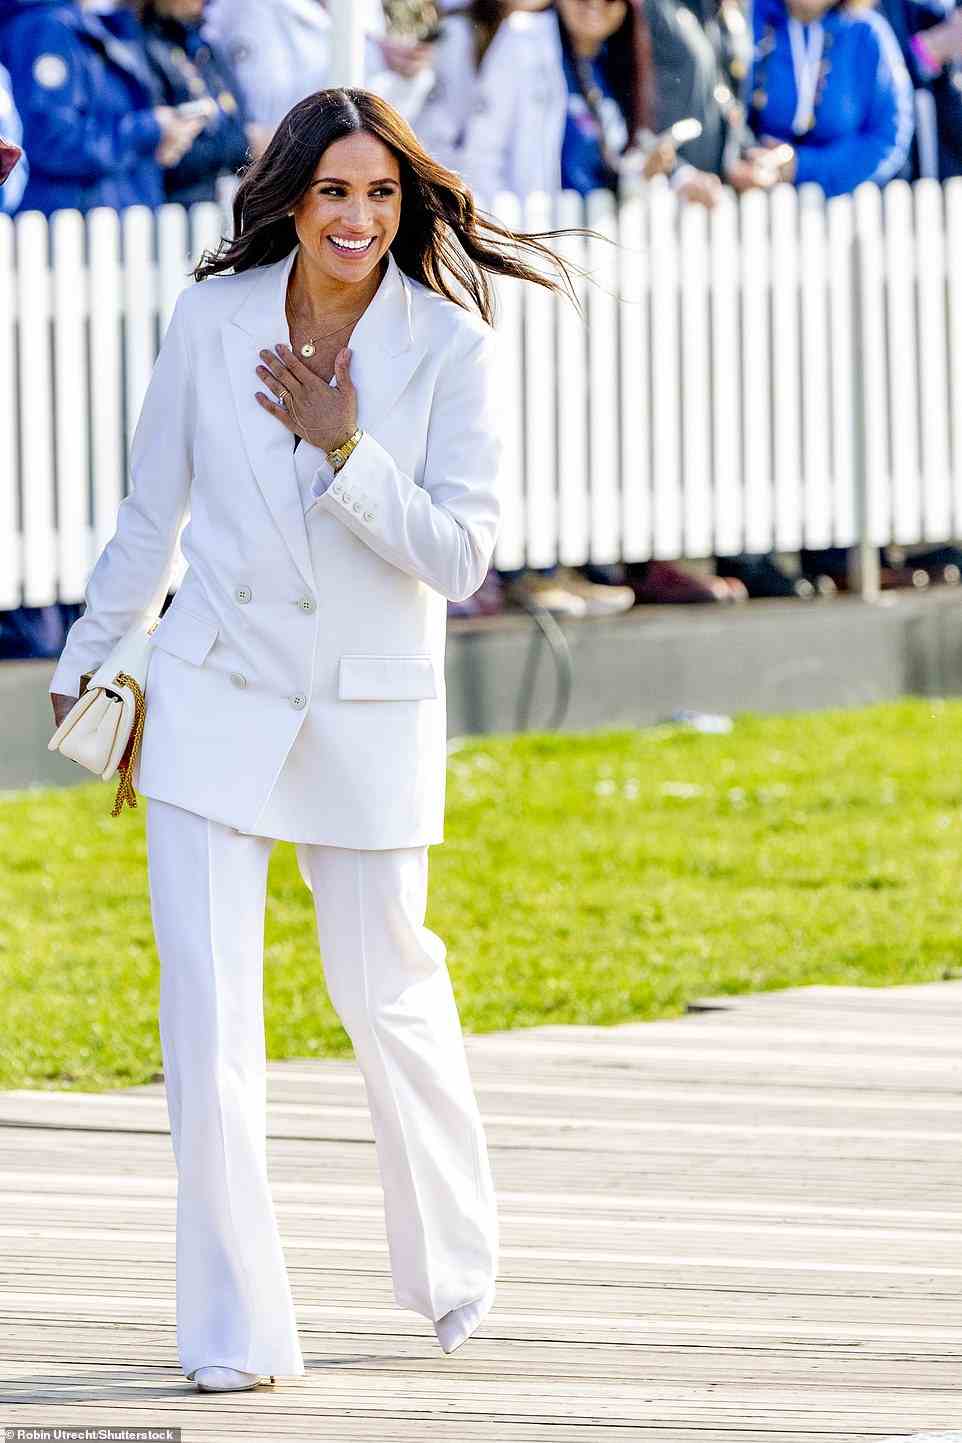 Meghan Markle schien gestern den frühen Tagen ihrer Romanze mit Prinz Harry Tribut zu zollen, als sie ein Outfit mit einem komplett weißen Outfit mit ihren Hochzeitsaccessoires trug